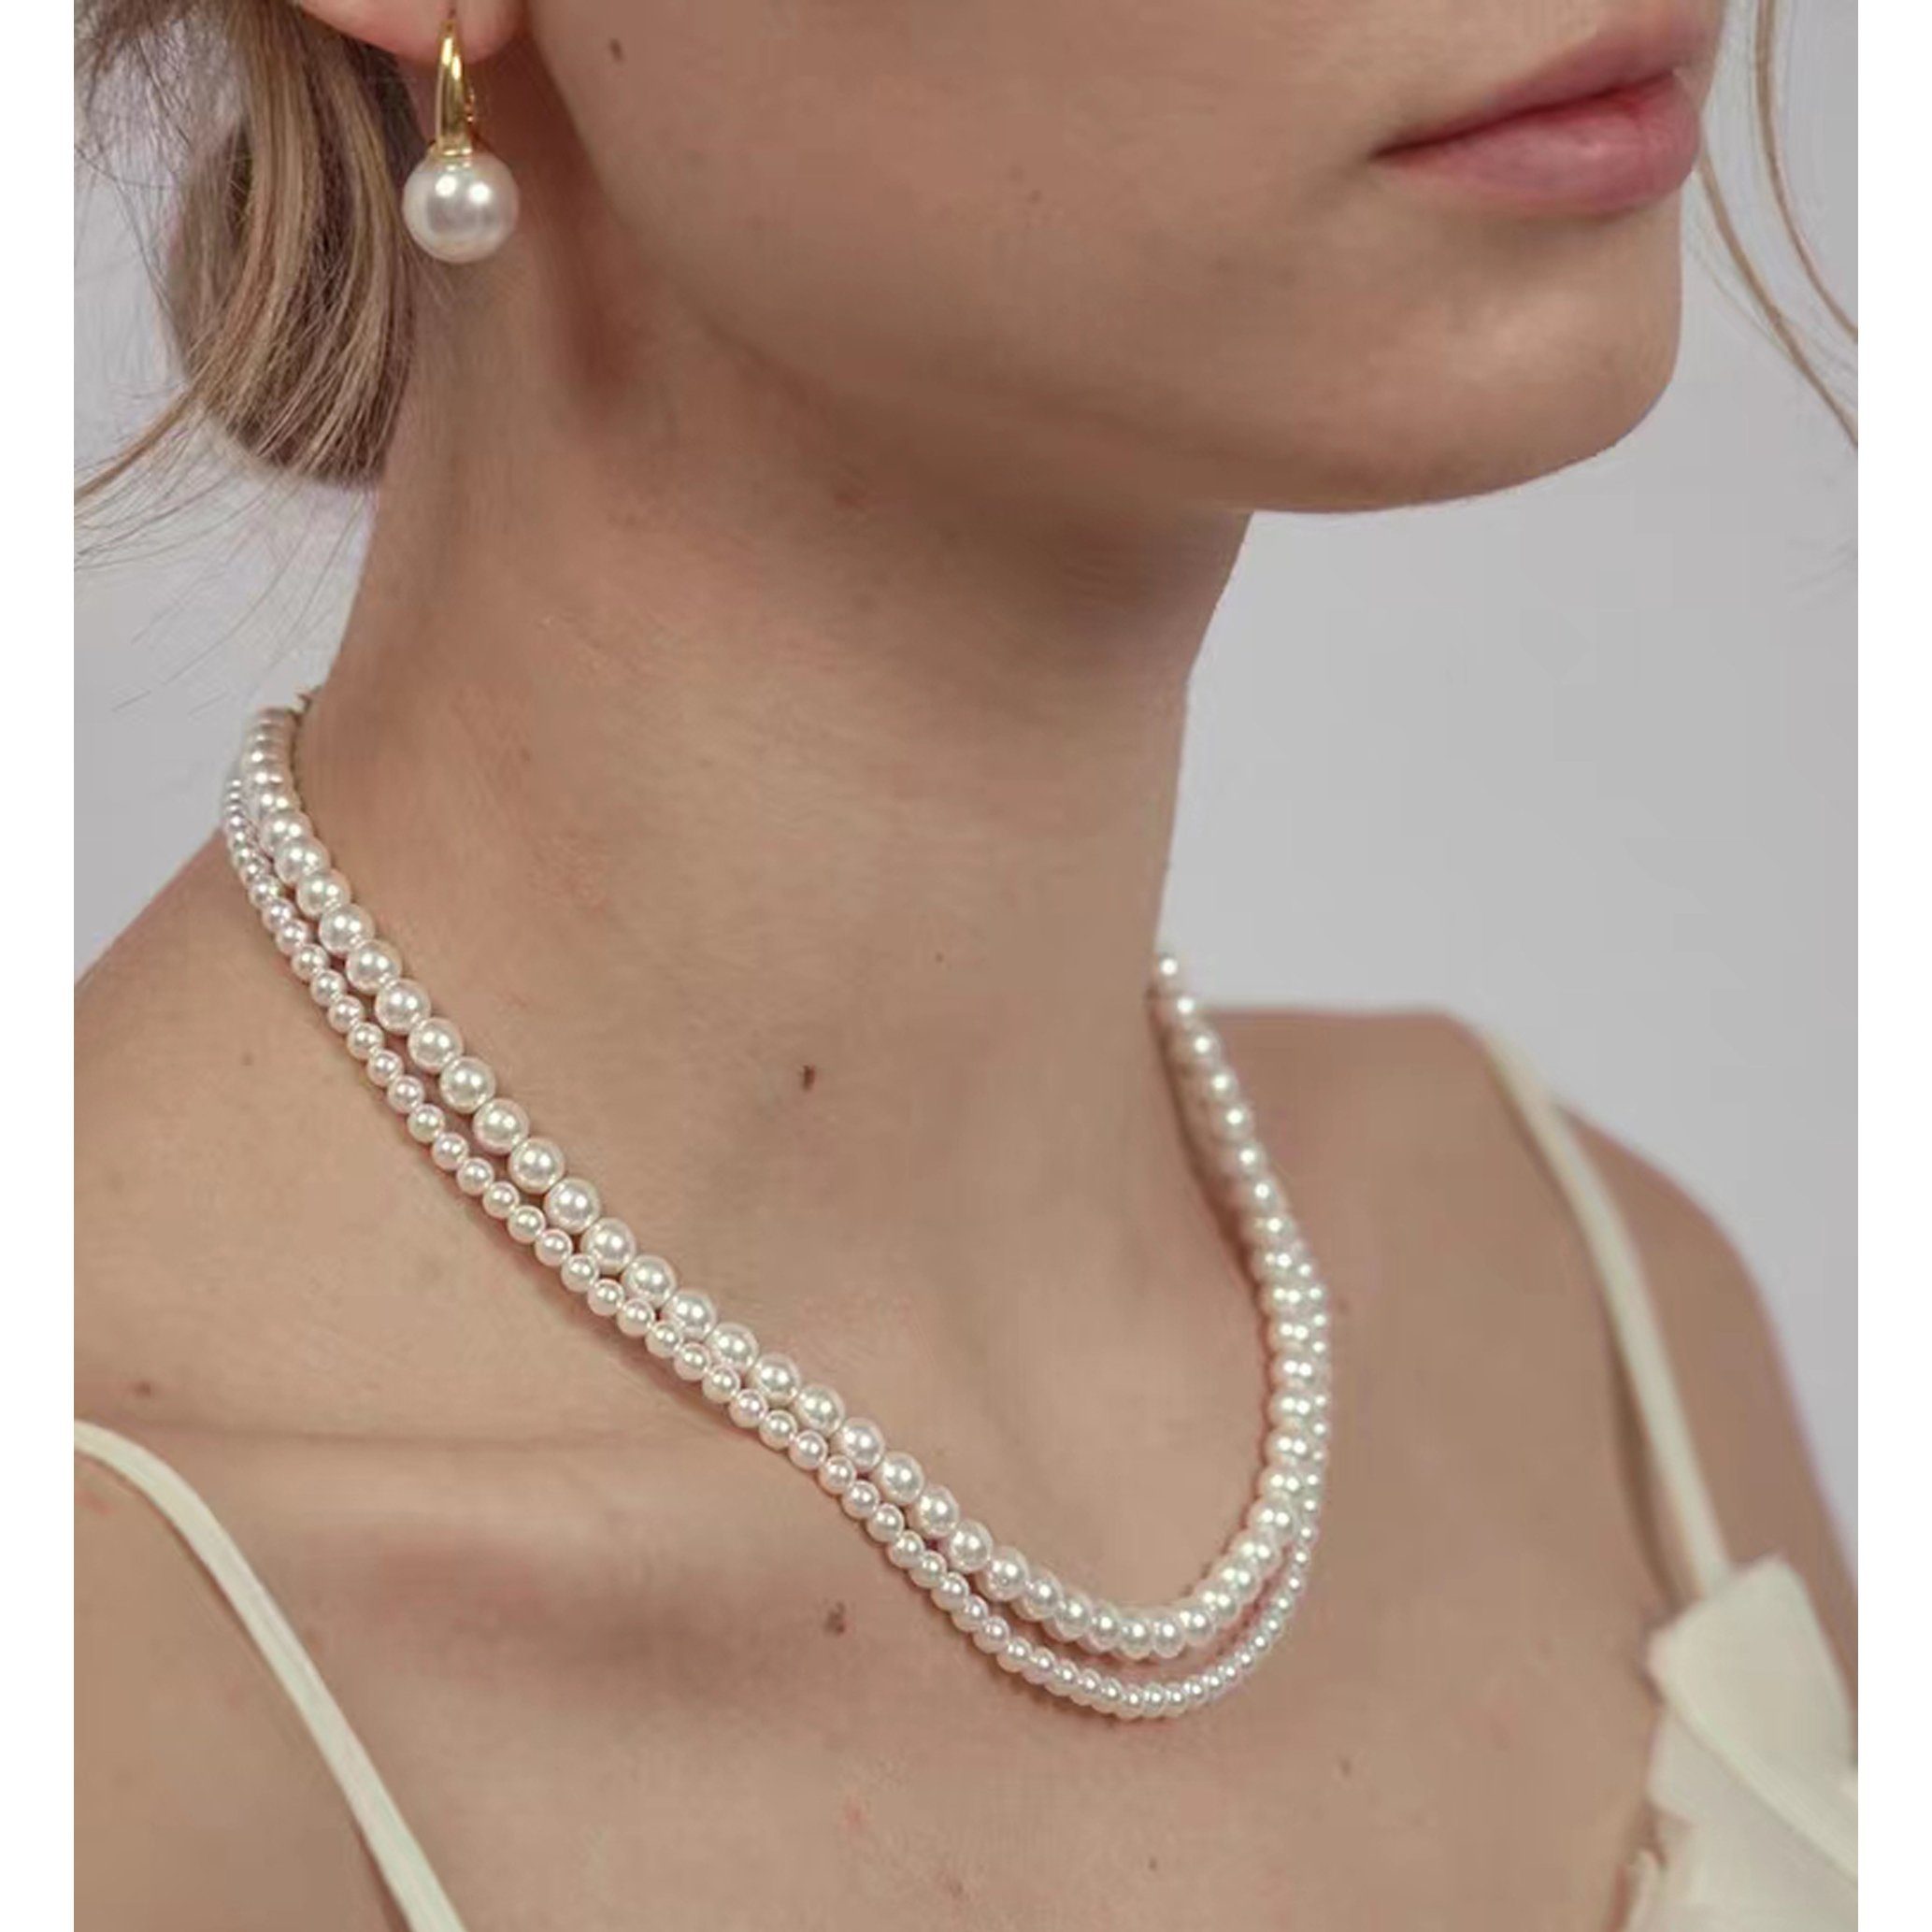 GOLDEN Perlenkette Kristall Perlen Halskette, Swarovski 5810 Perlen Runde Crystal Pearls Halskette 40cm + 5cm